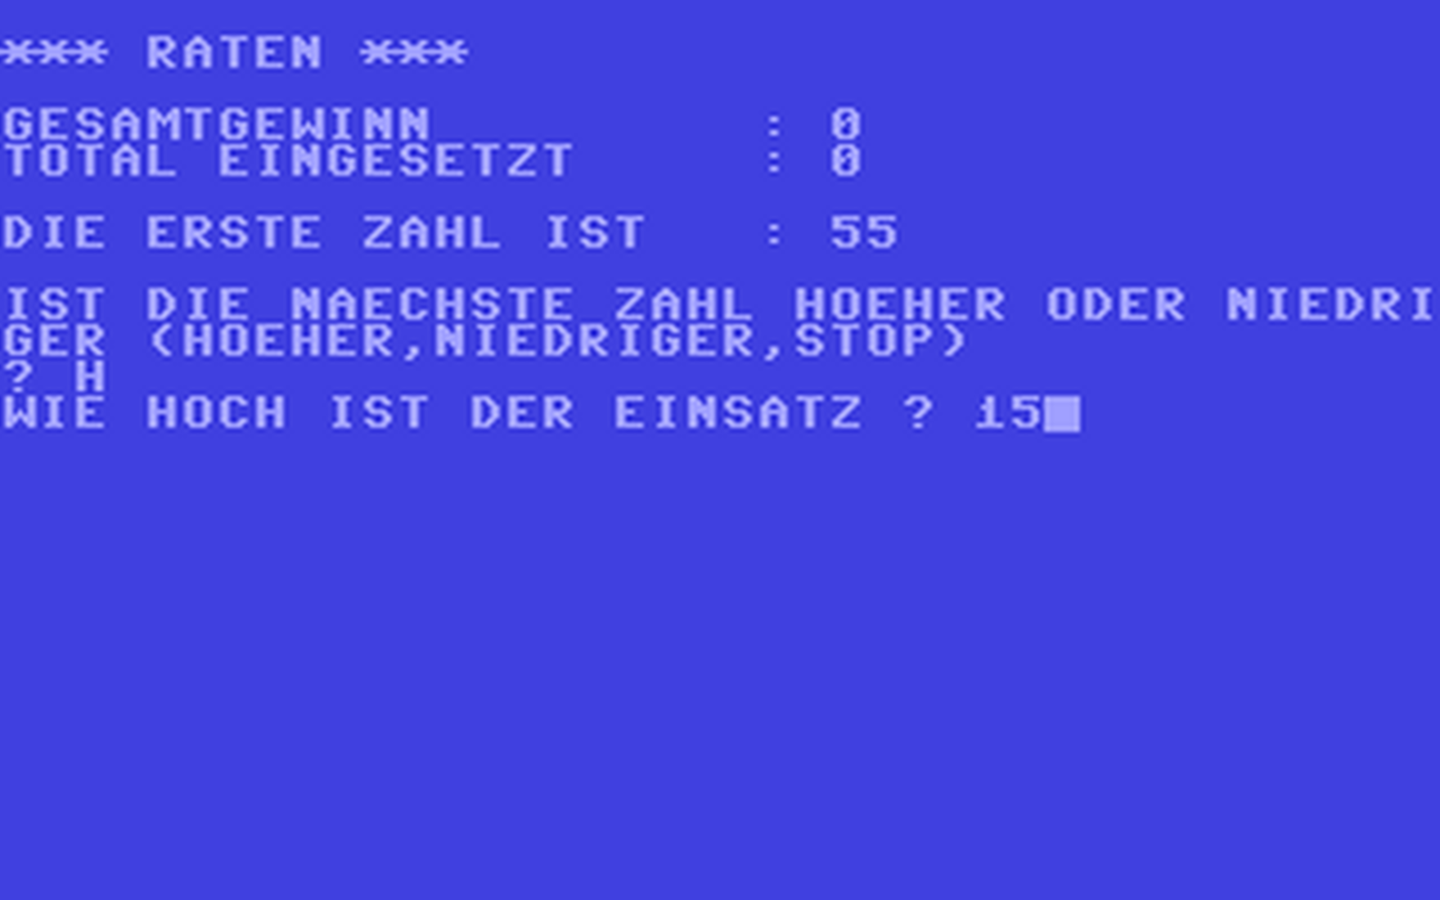 C64 GameBase Glücksspiel Pflaum_Verlag_München 1985